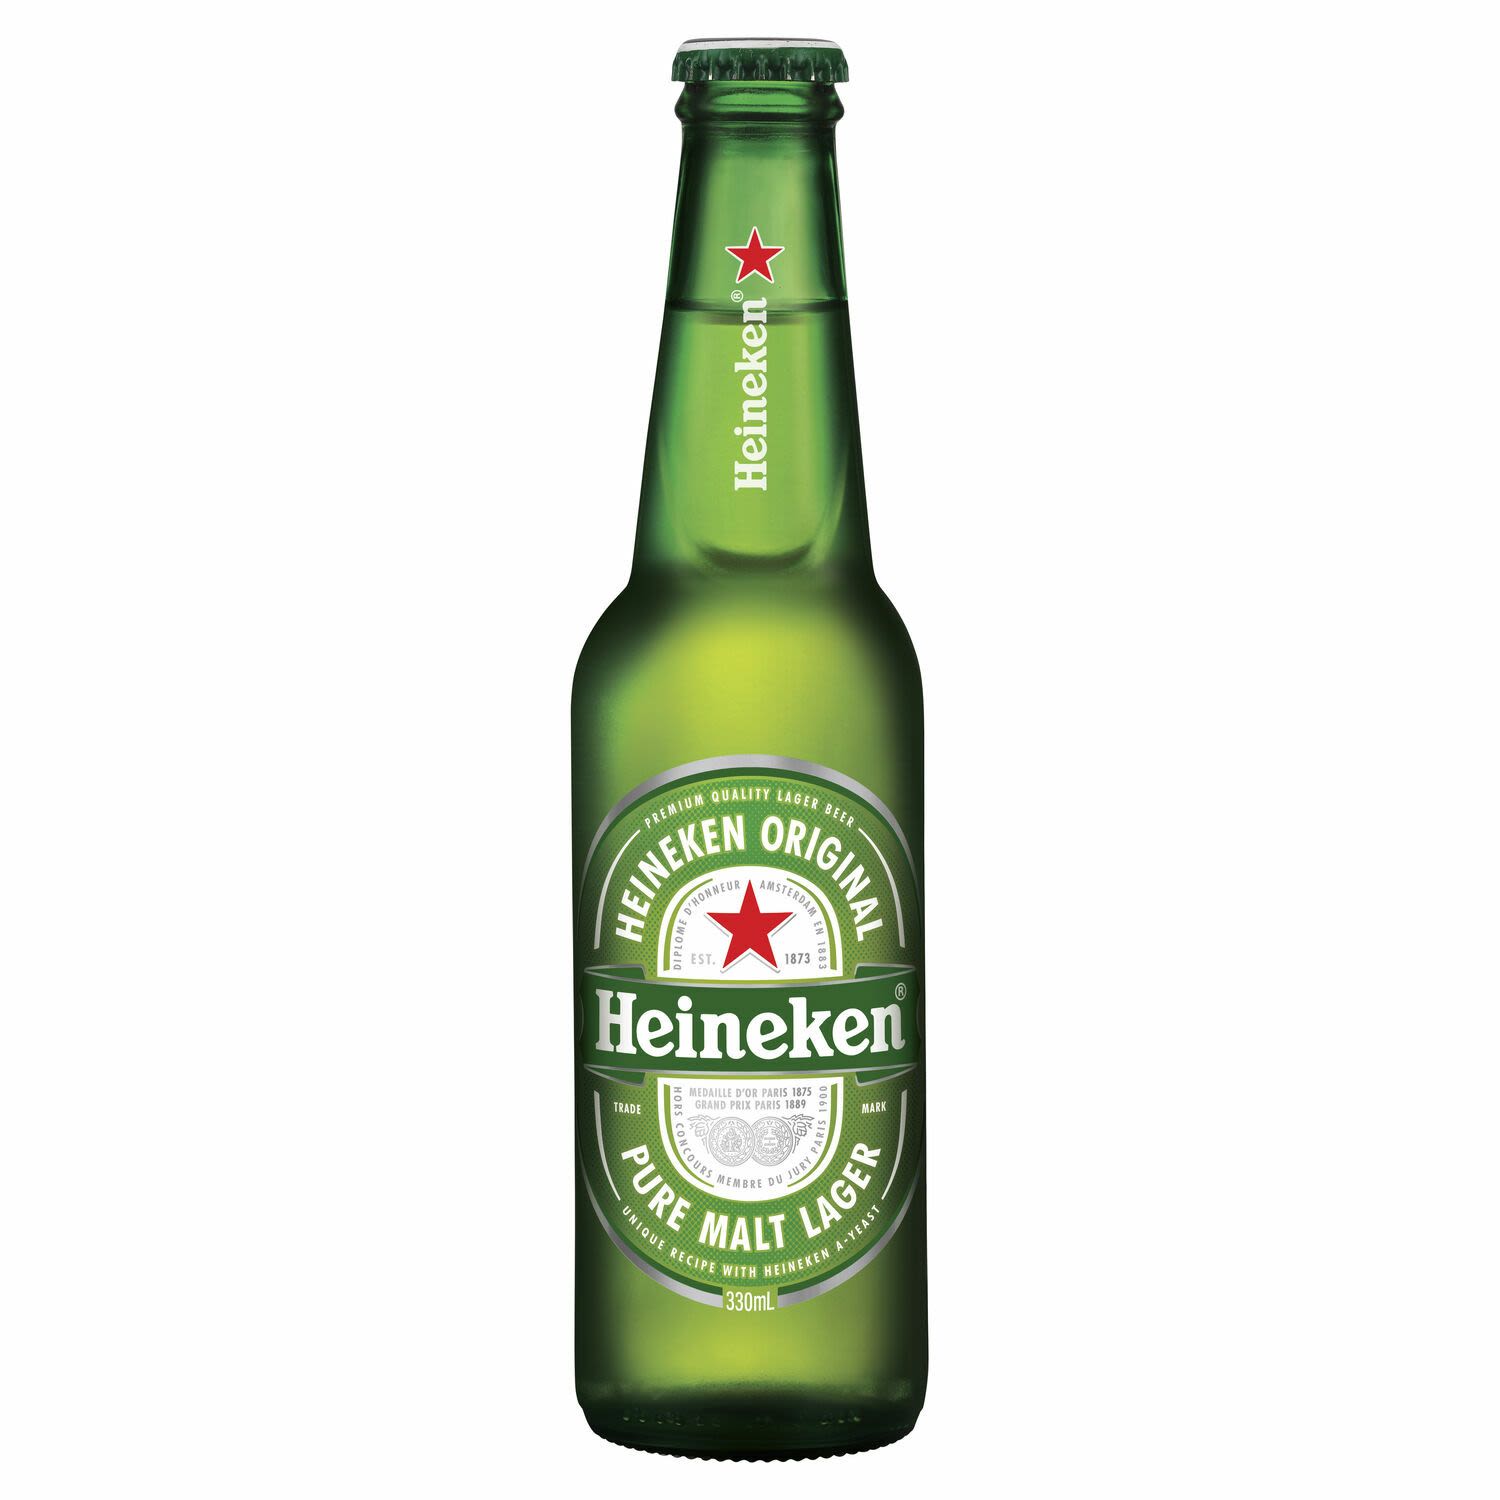 Heineken Lager Bottle 330mL 6 Pack